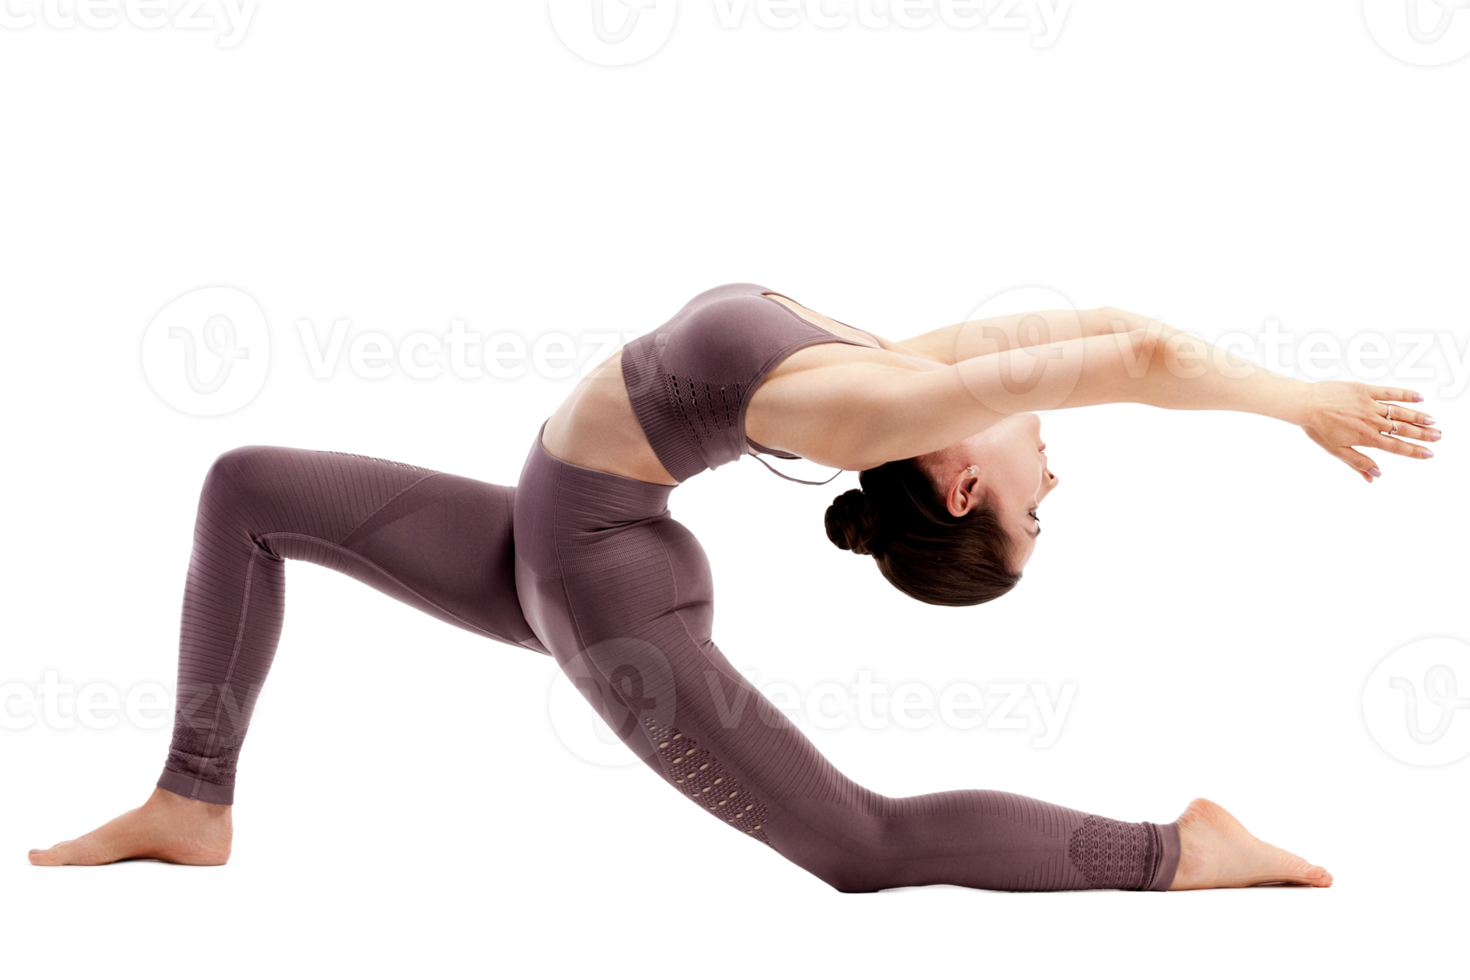 jung Frau tun Yoga trainieren png